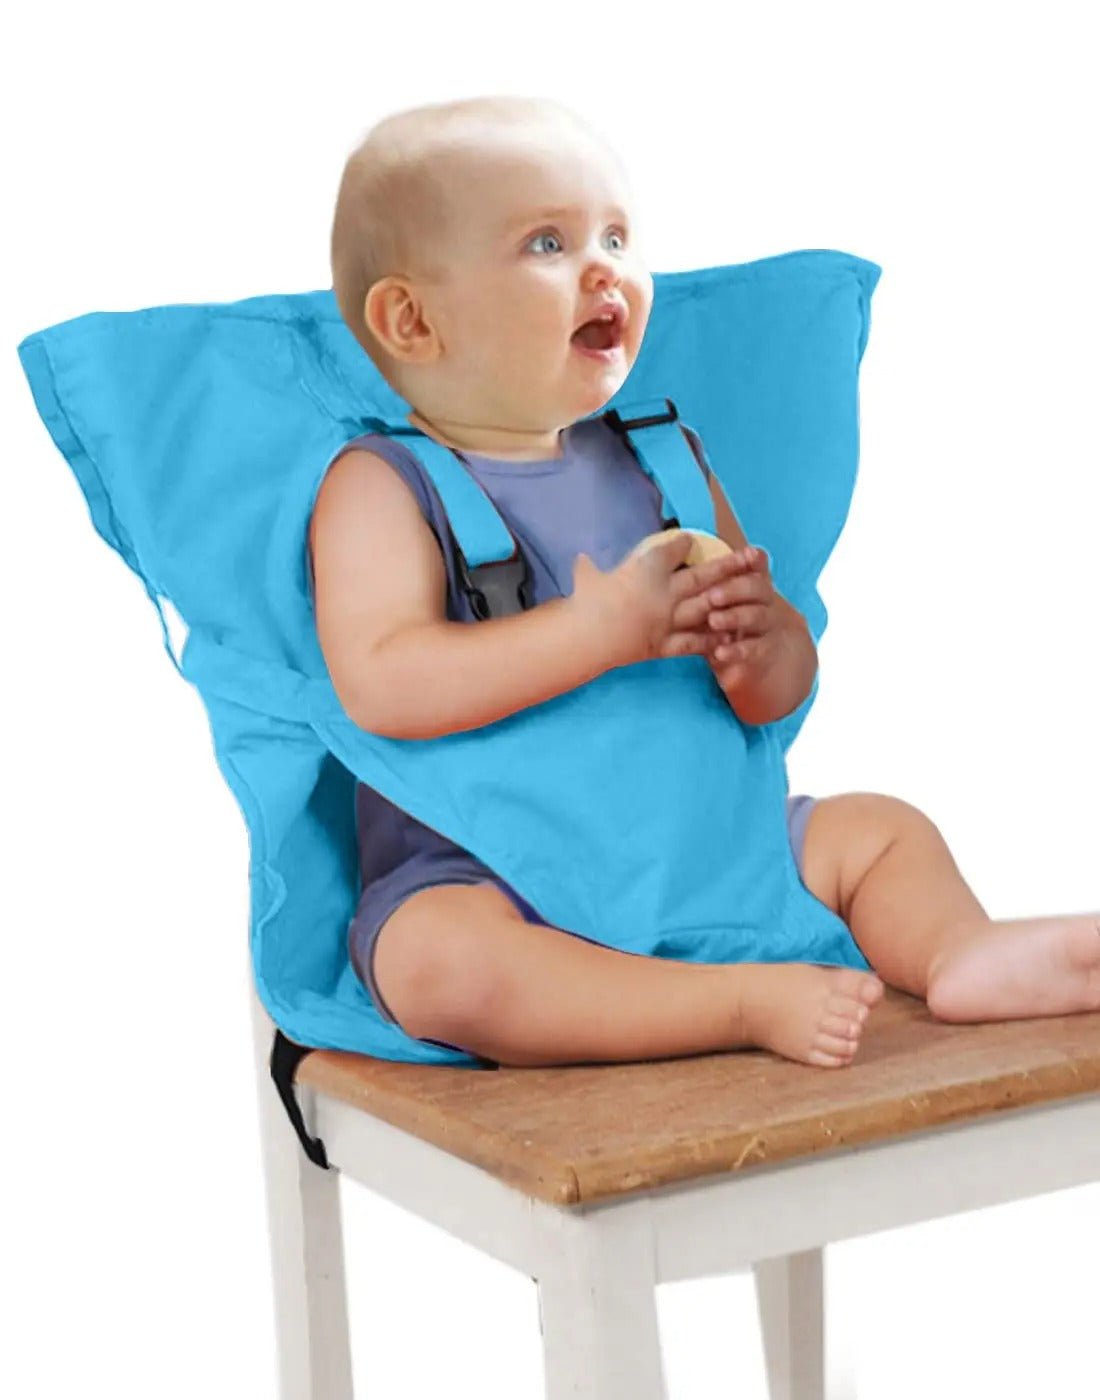 Easy-Seat TM/ Harnais chaise bébé – bbcadum